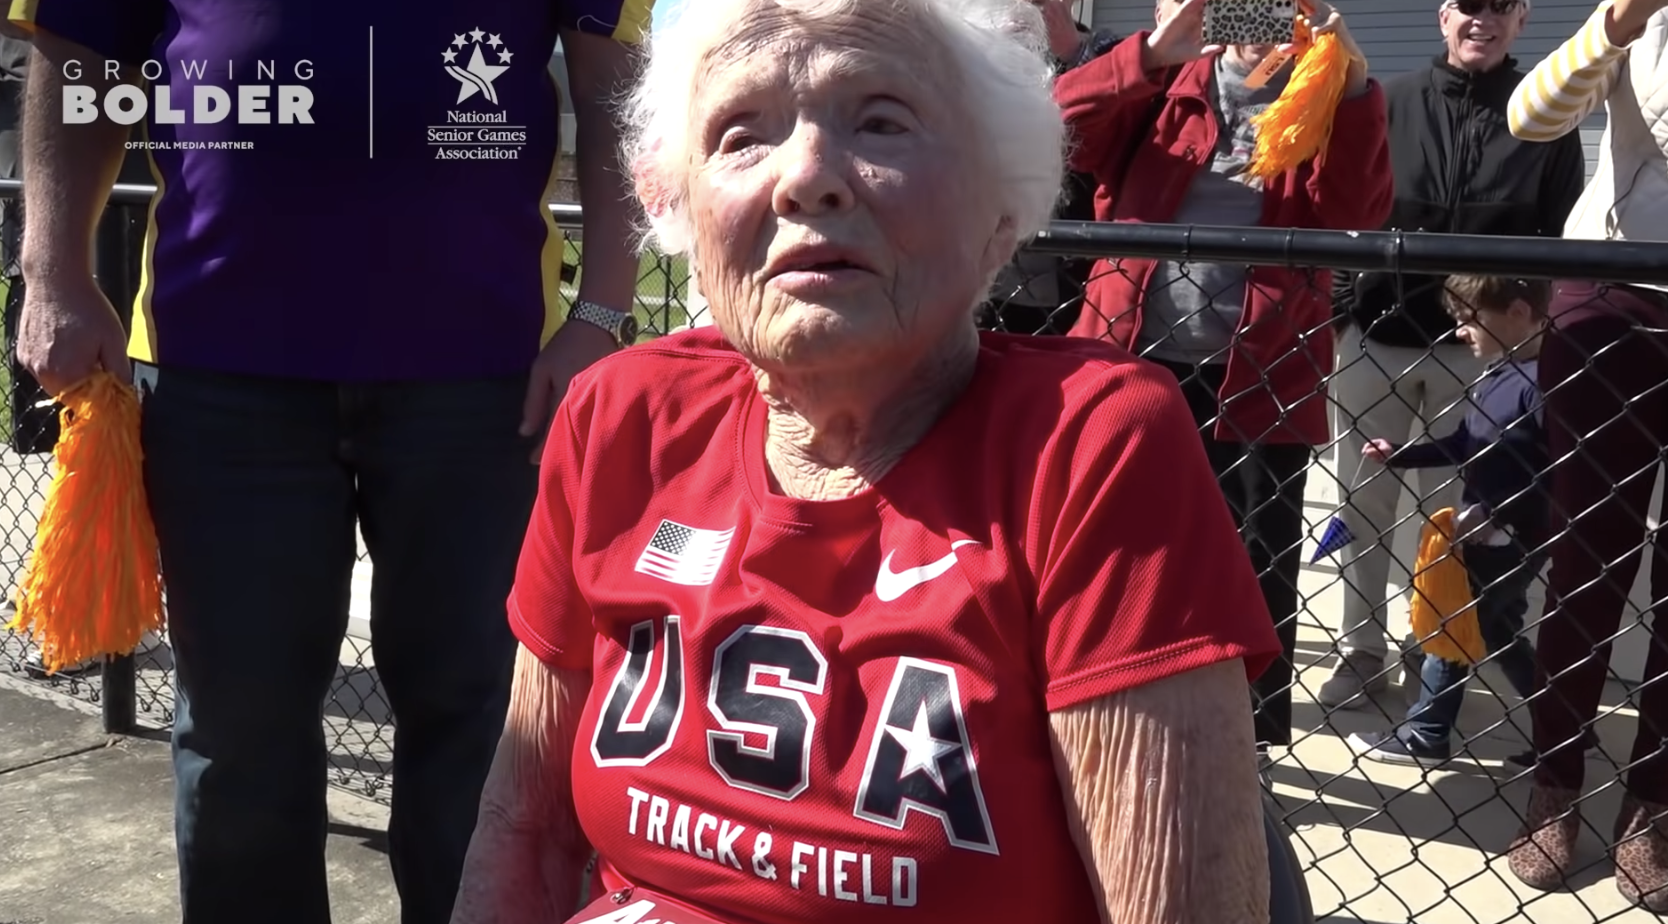 105 évesen megdöntötte a 100 méteres síkfutás korosztályos rekordját, mégis csalódott